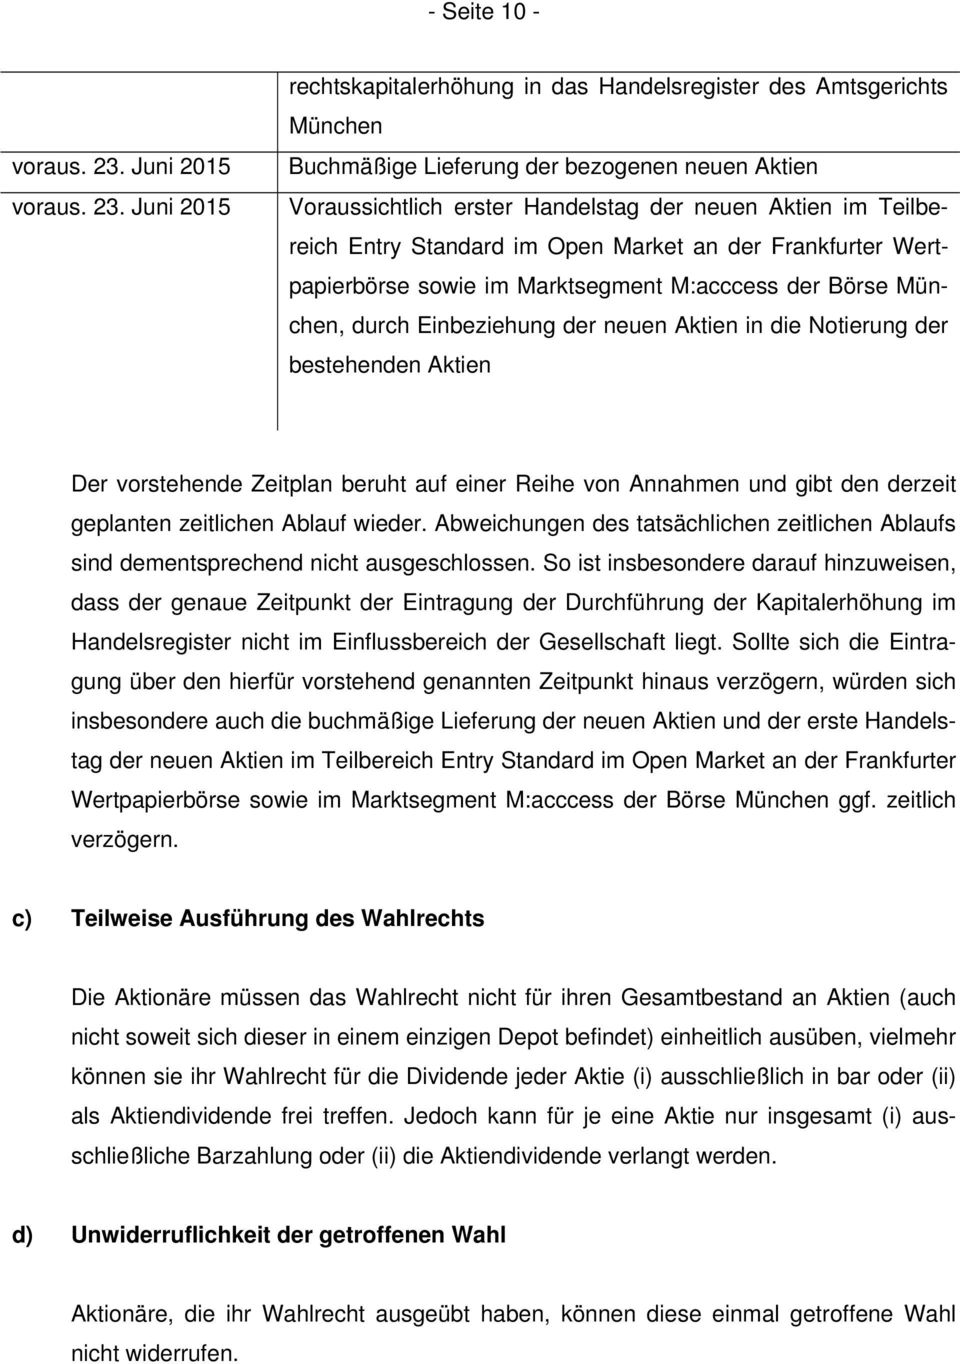 Juni 2015 rechtskapitalerhöhung in das Handelsregister des Amtsgerichts München Buchmäßige Lieferung der bezogenen neuen Aktien Voraussichtlich erster Handelstag der neuen Aktien im Teilbereich Entry